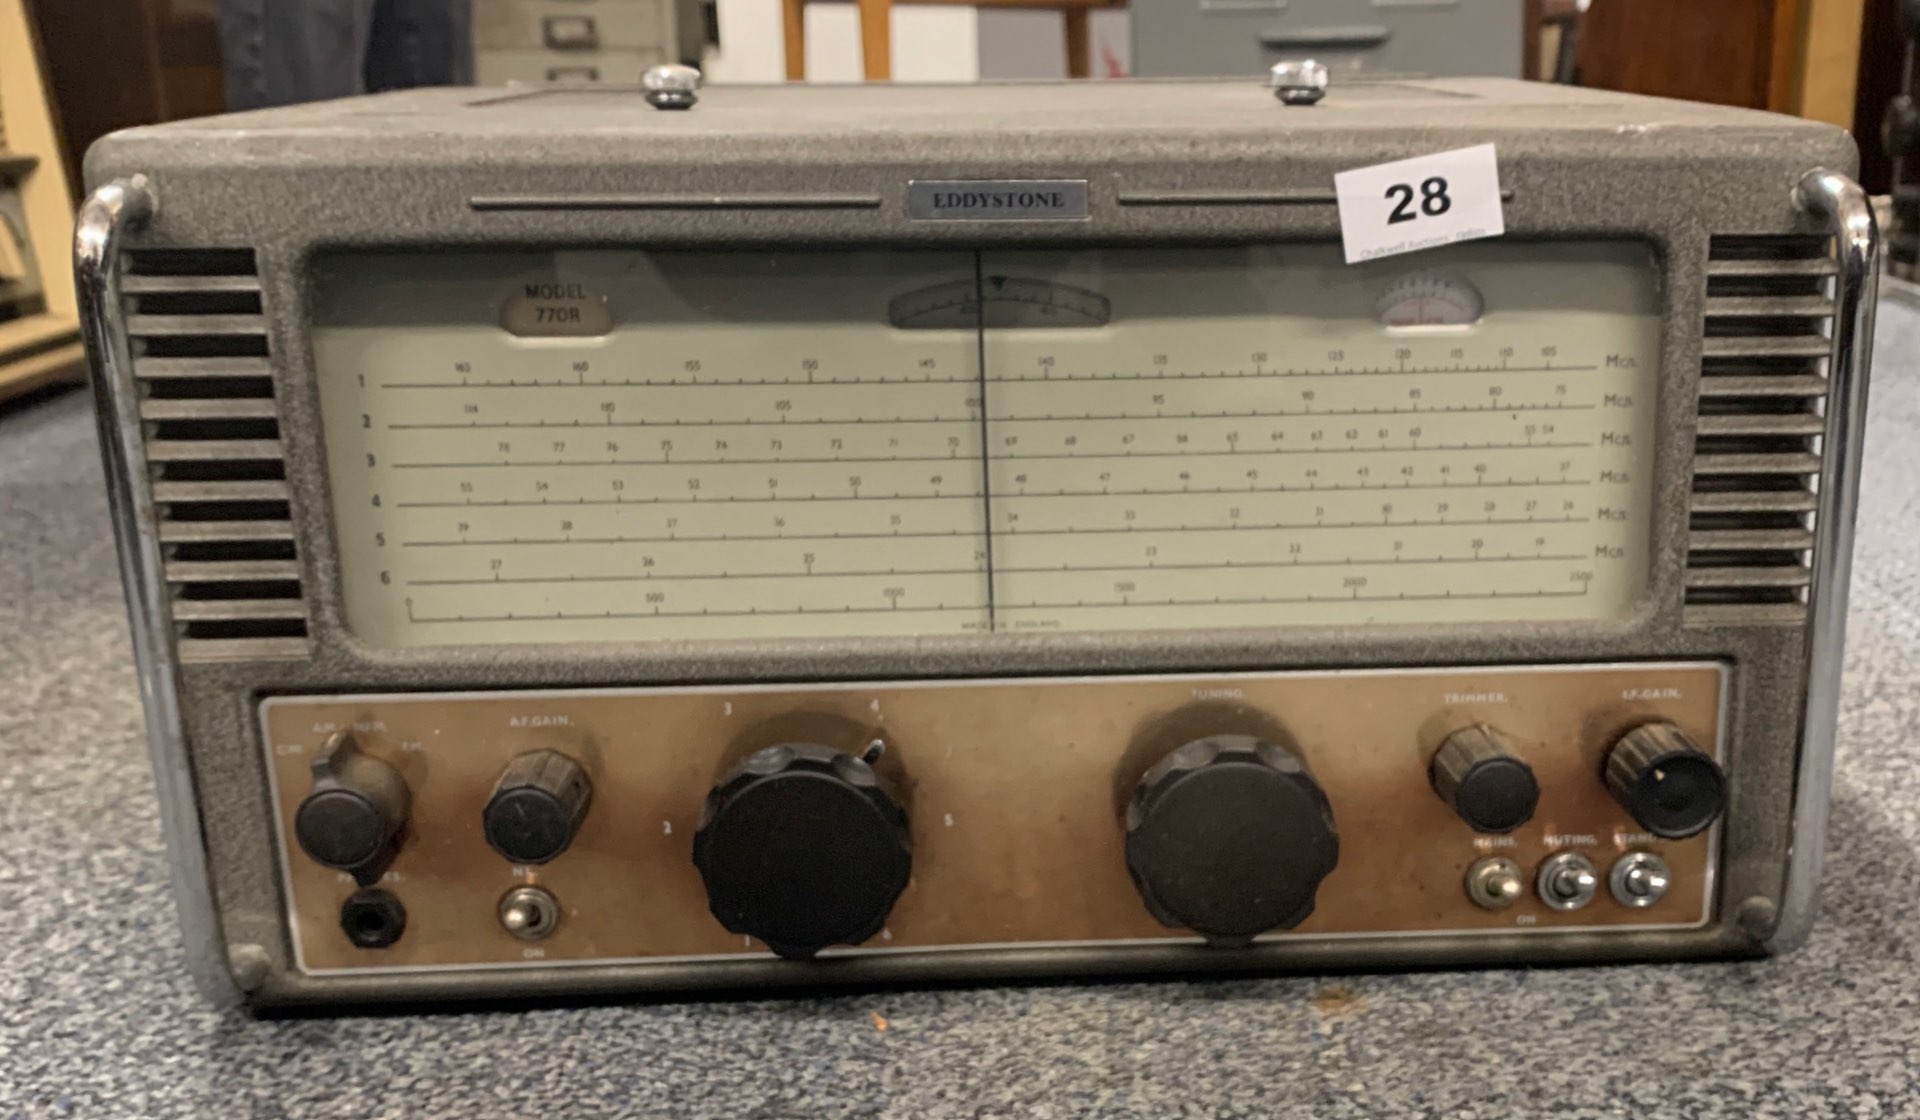 An Eddystone communication receiver model 770R.